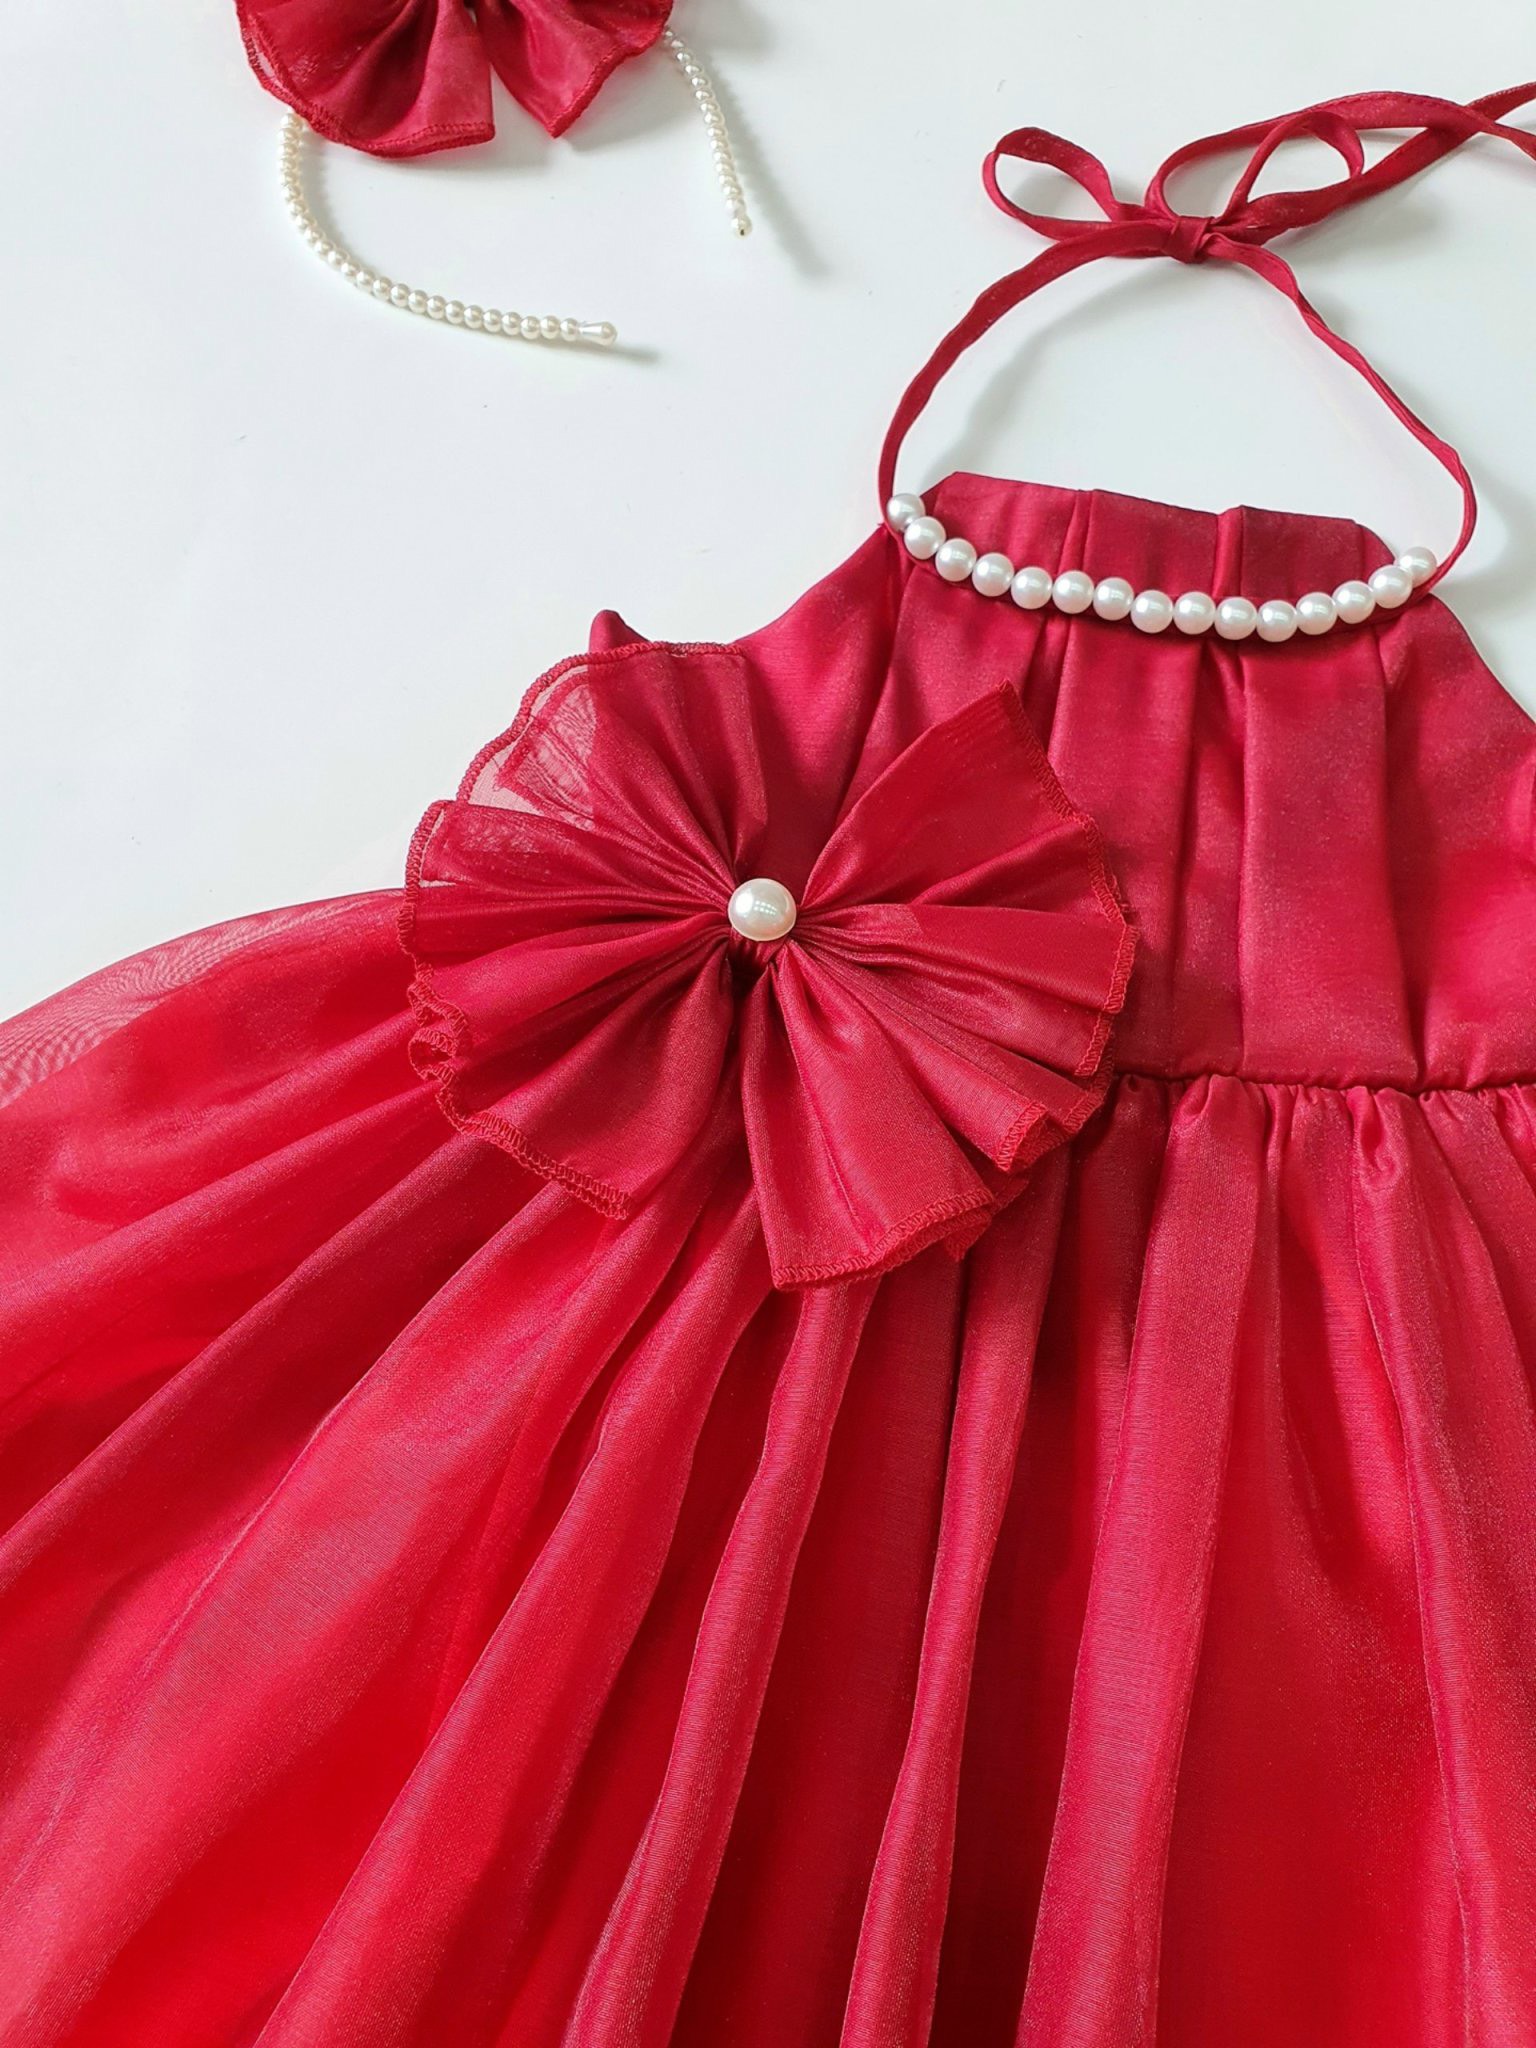 Váy yếm công chúa đỏ đính ngọc tặng kèm cài nơ cho bé gái 4kg-28kg rất xinh